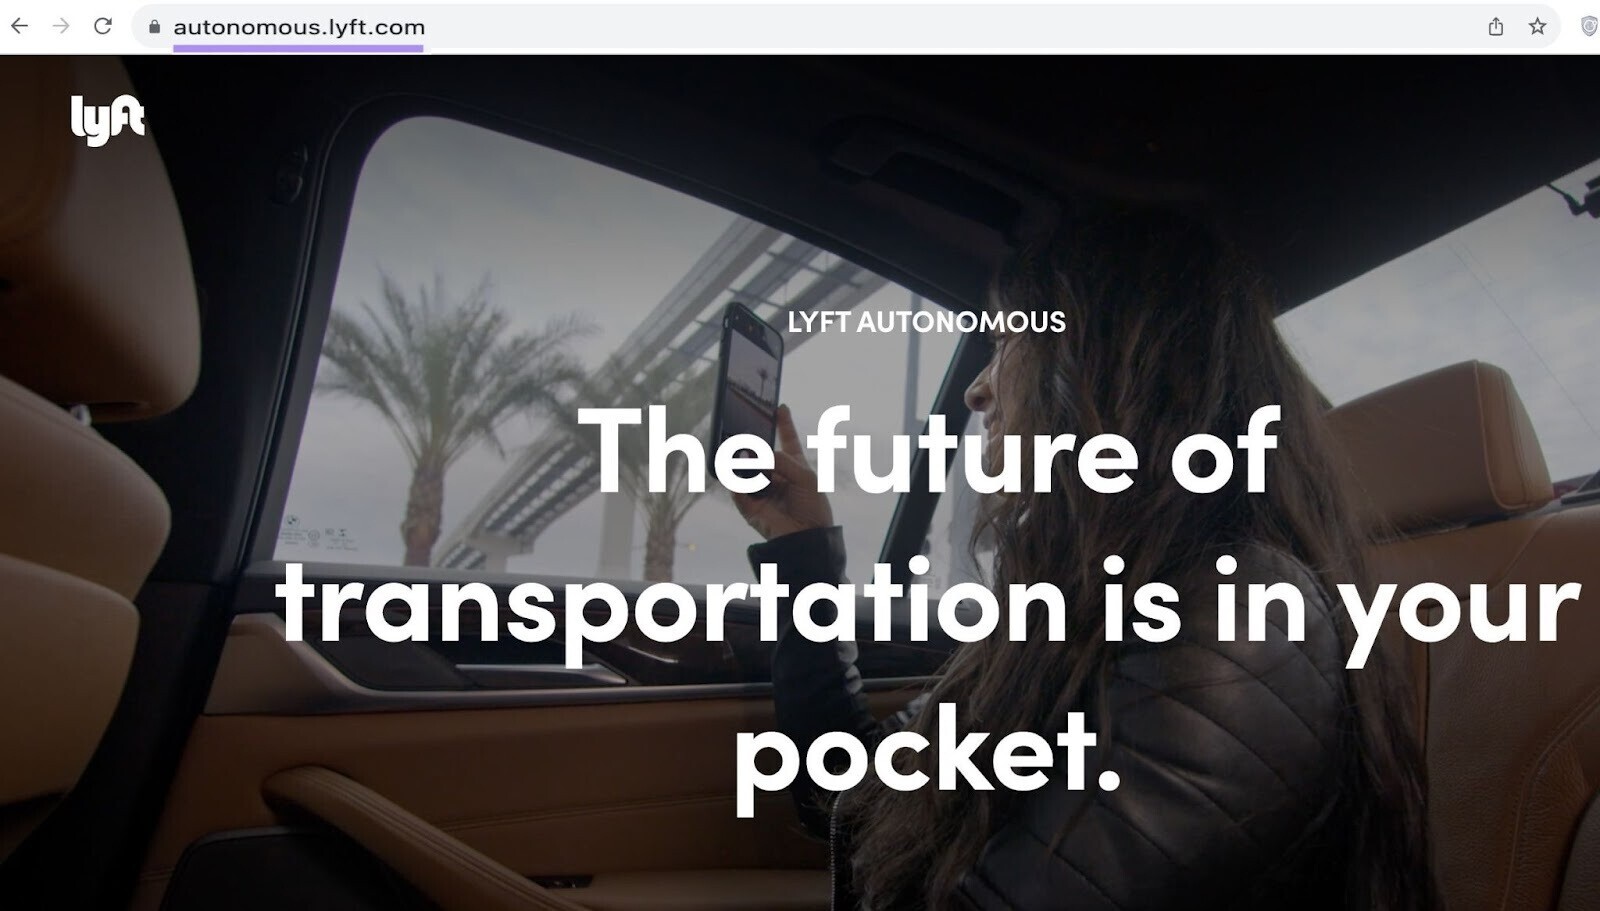 "autonomous.lyft.com" subdomain homepage